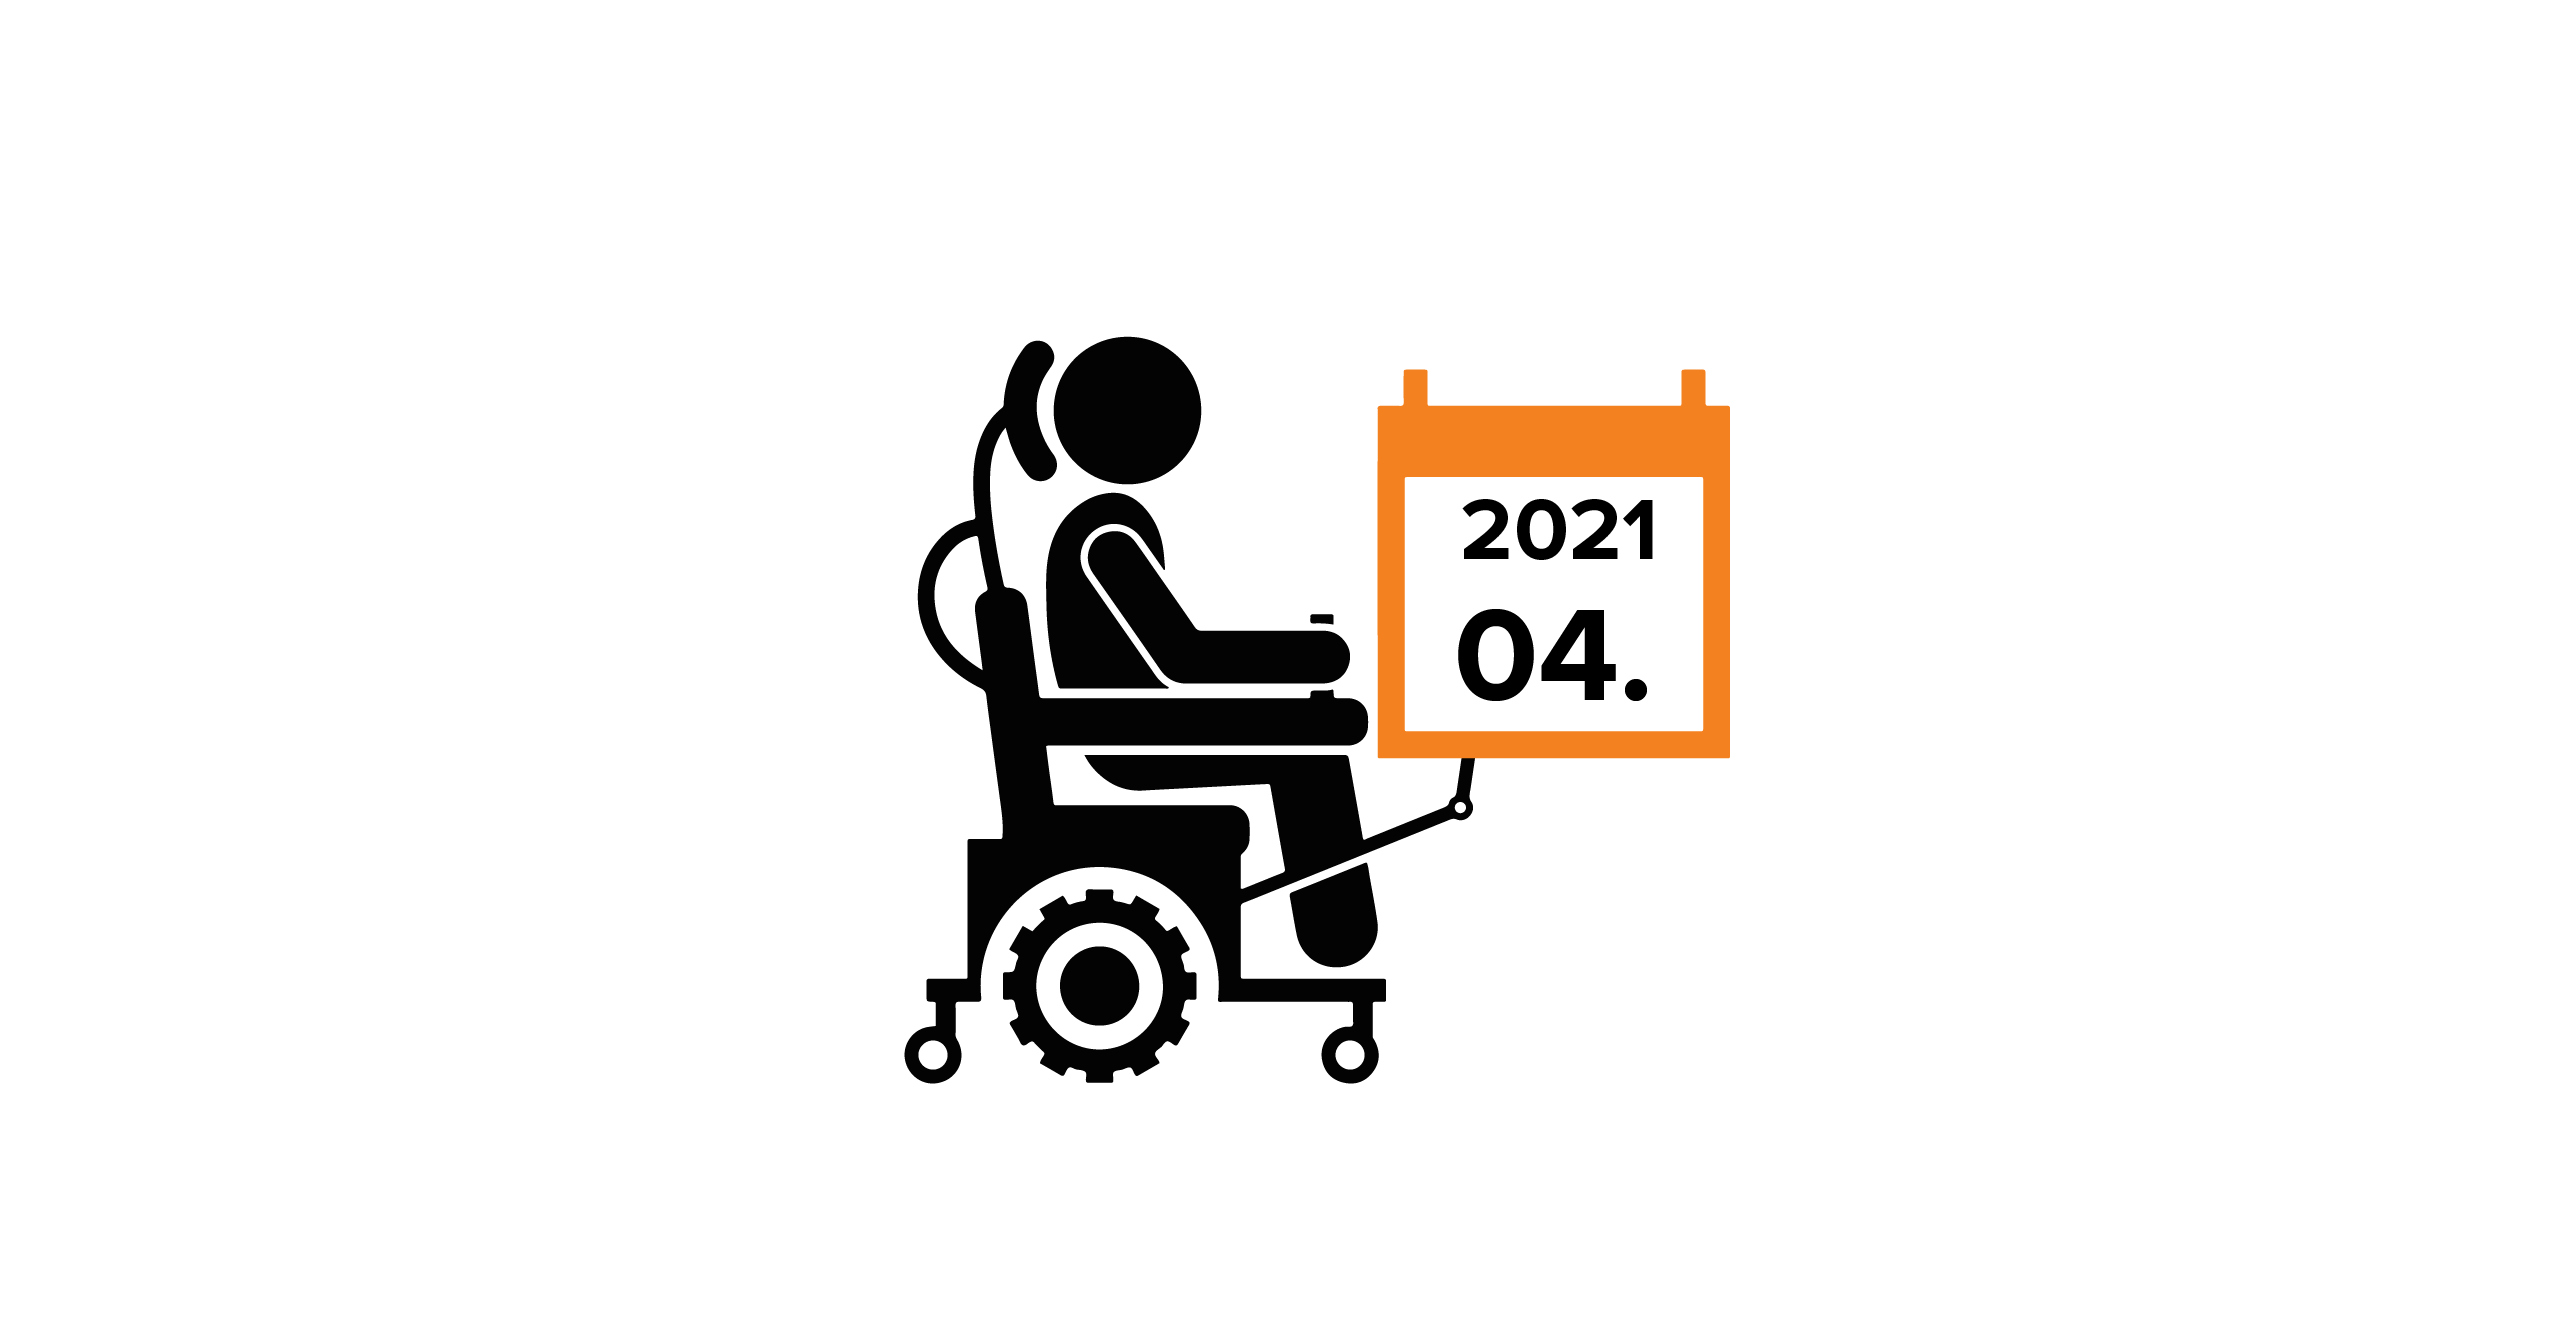 Na grafice człowiek na wózku trzymający kalendarz z datą 04.2021